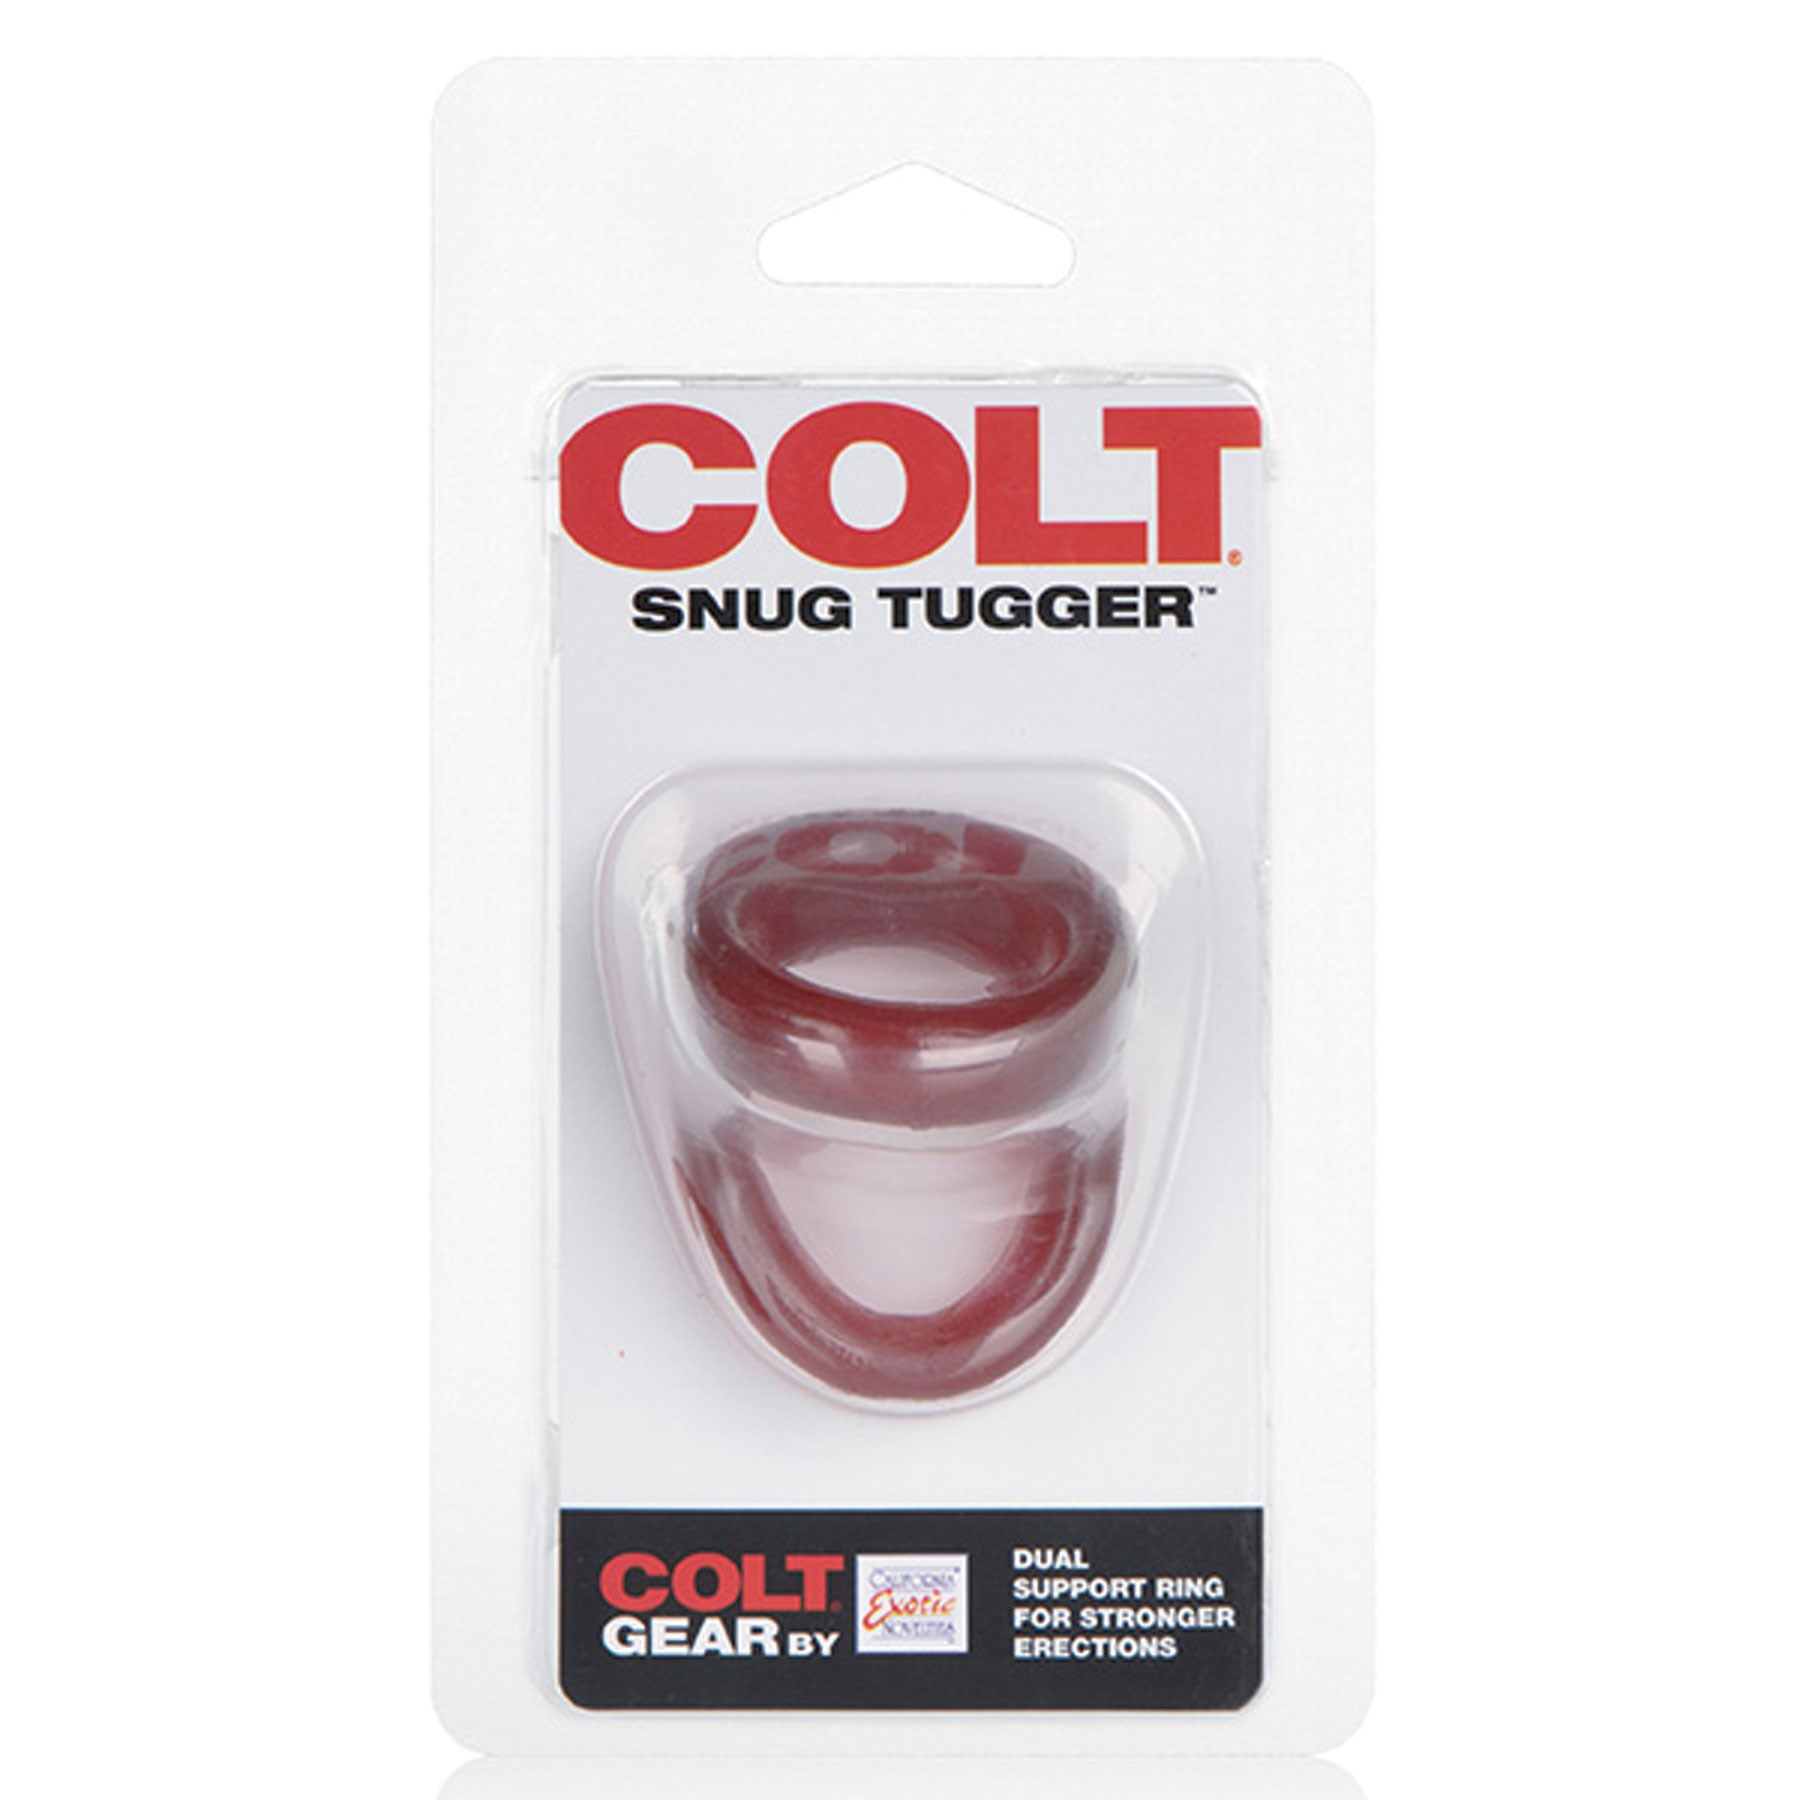 Colt Snug Tugger Penis Ring red package